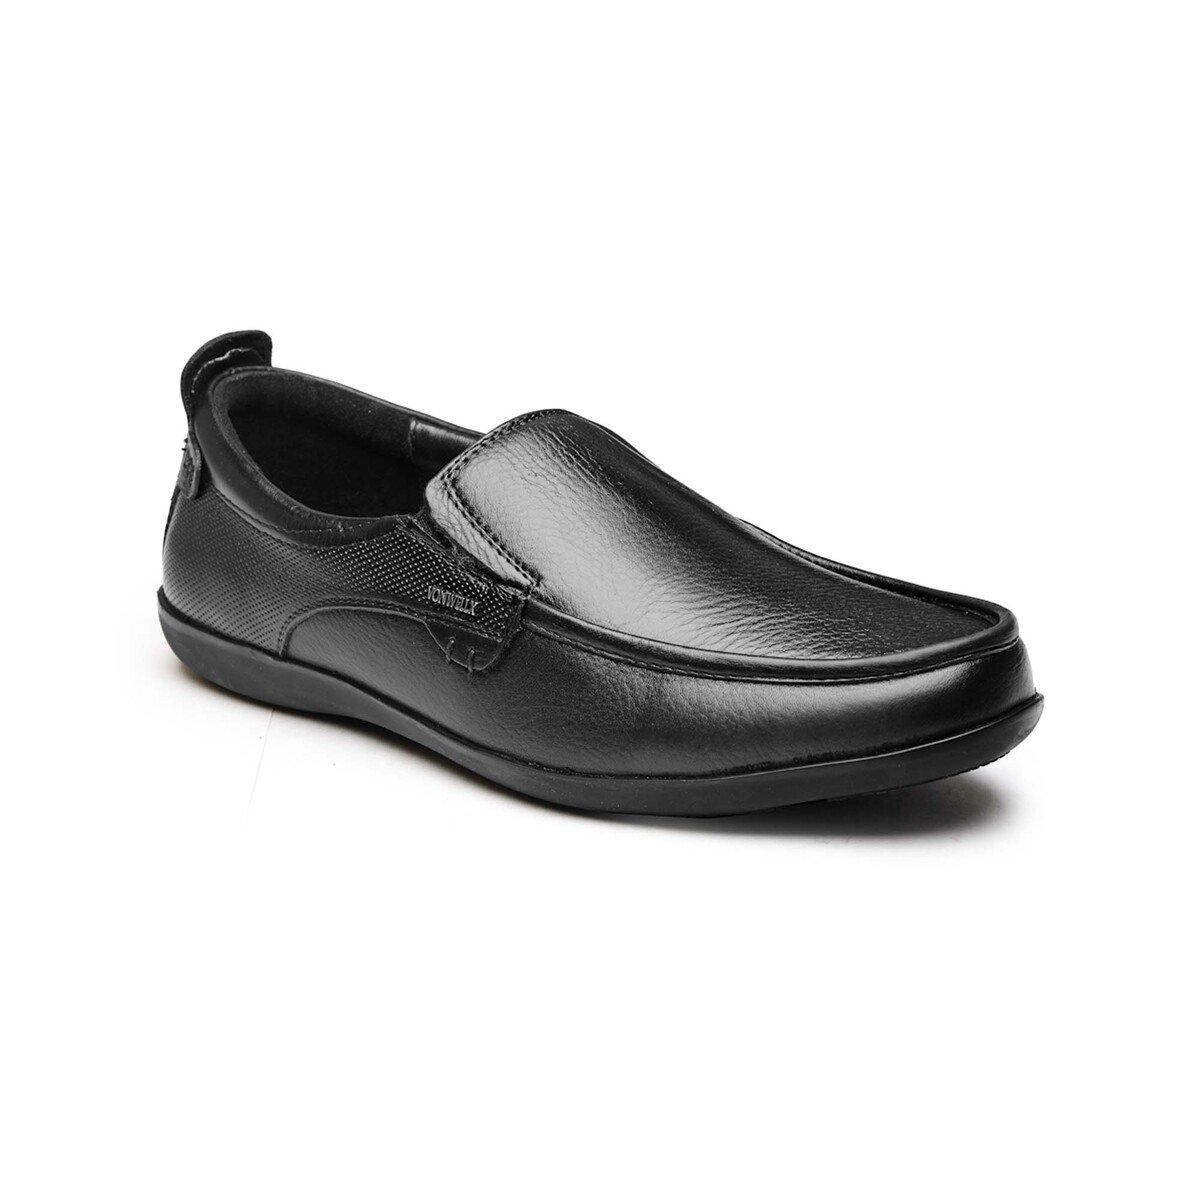 Von Wellx Men's Formal Shoes 75001 Black, 44 Online at Best Price ...